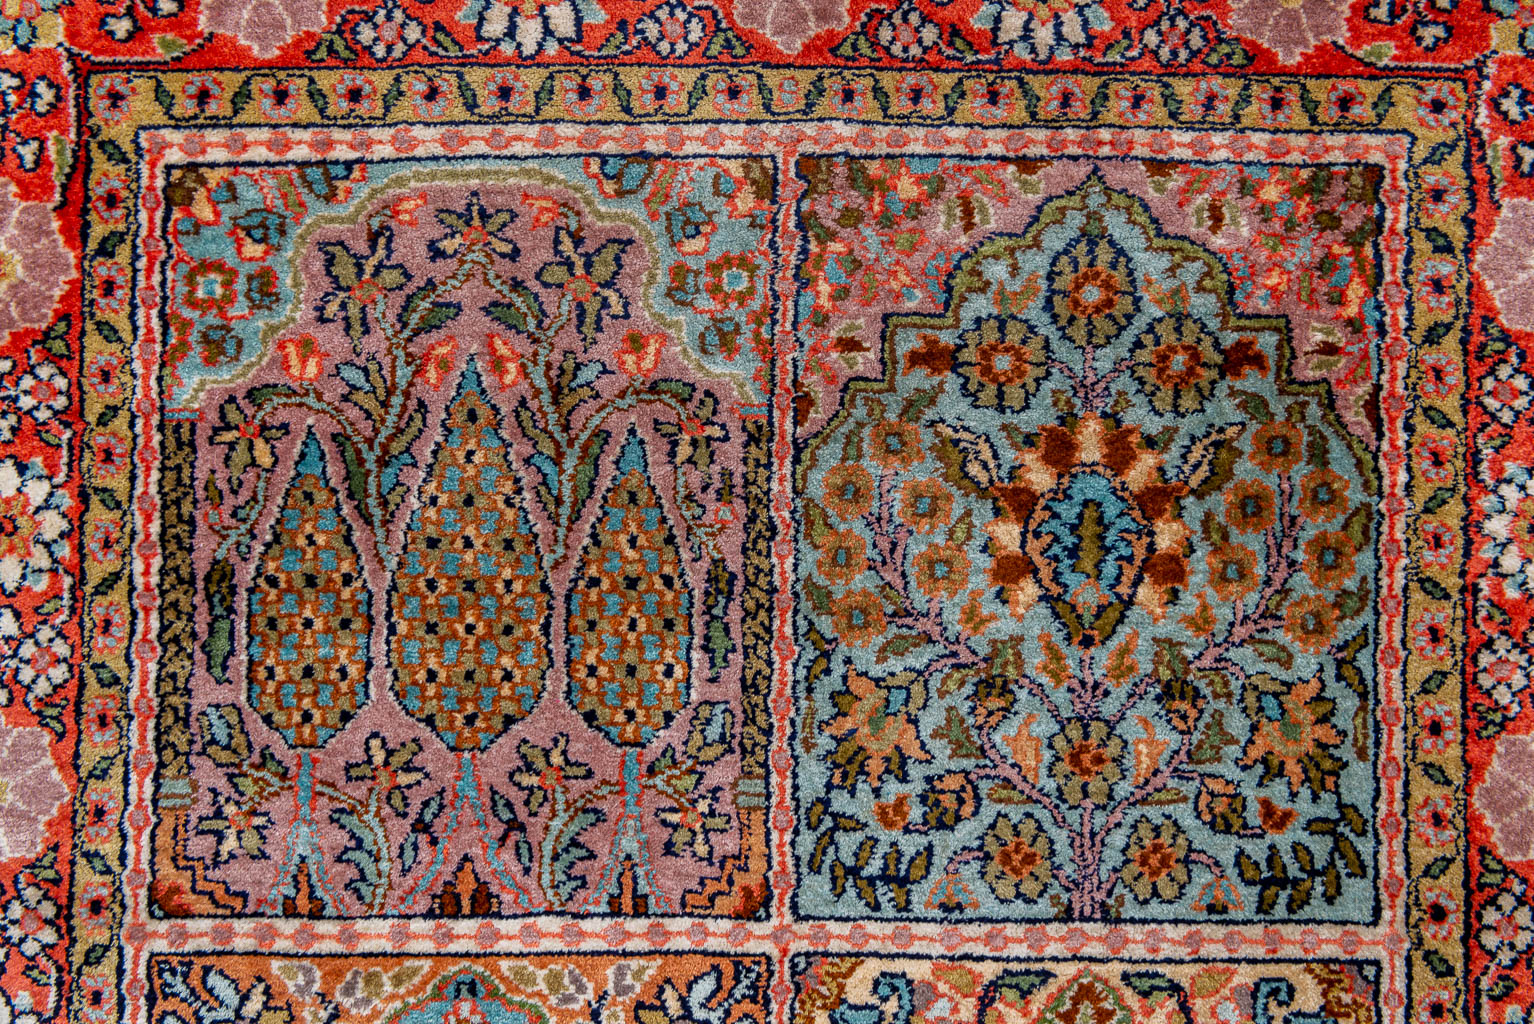 An Oriental hand-made carpet made in Kashmir. (122 x 77 cm)